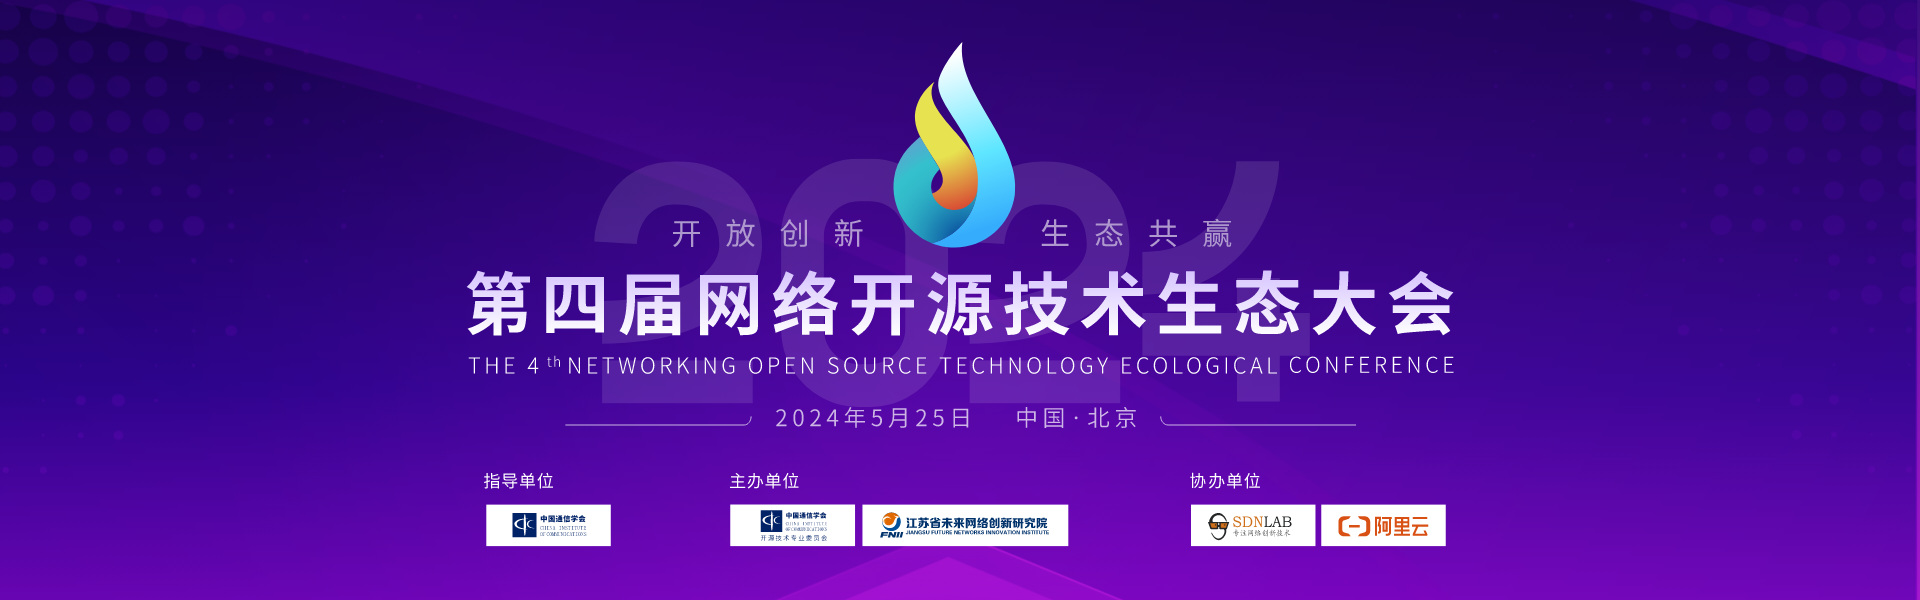 第四届网络开源技术生态大会